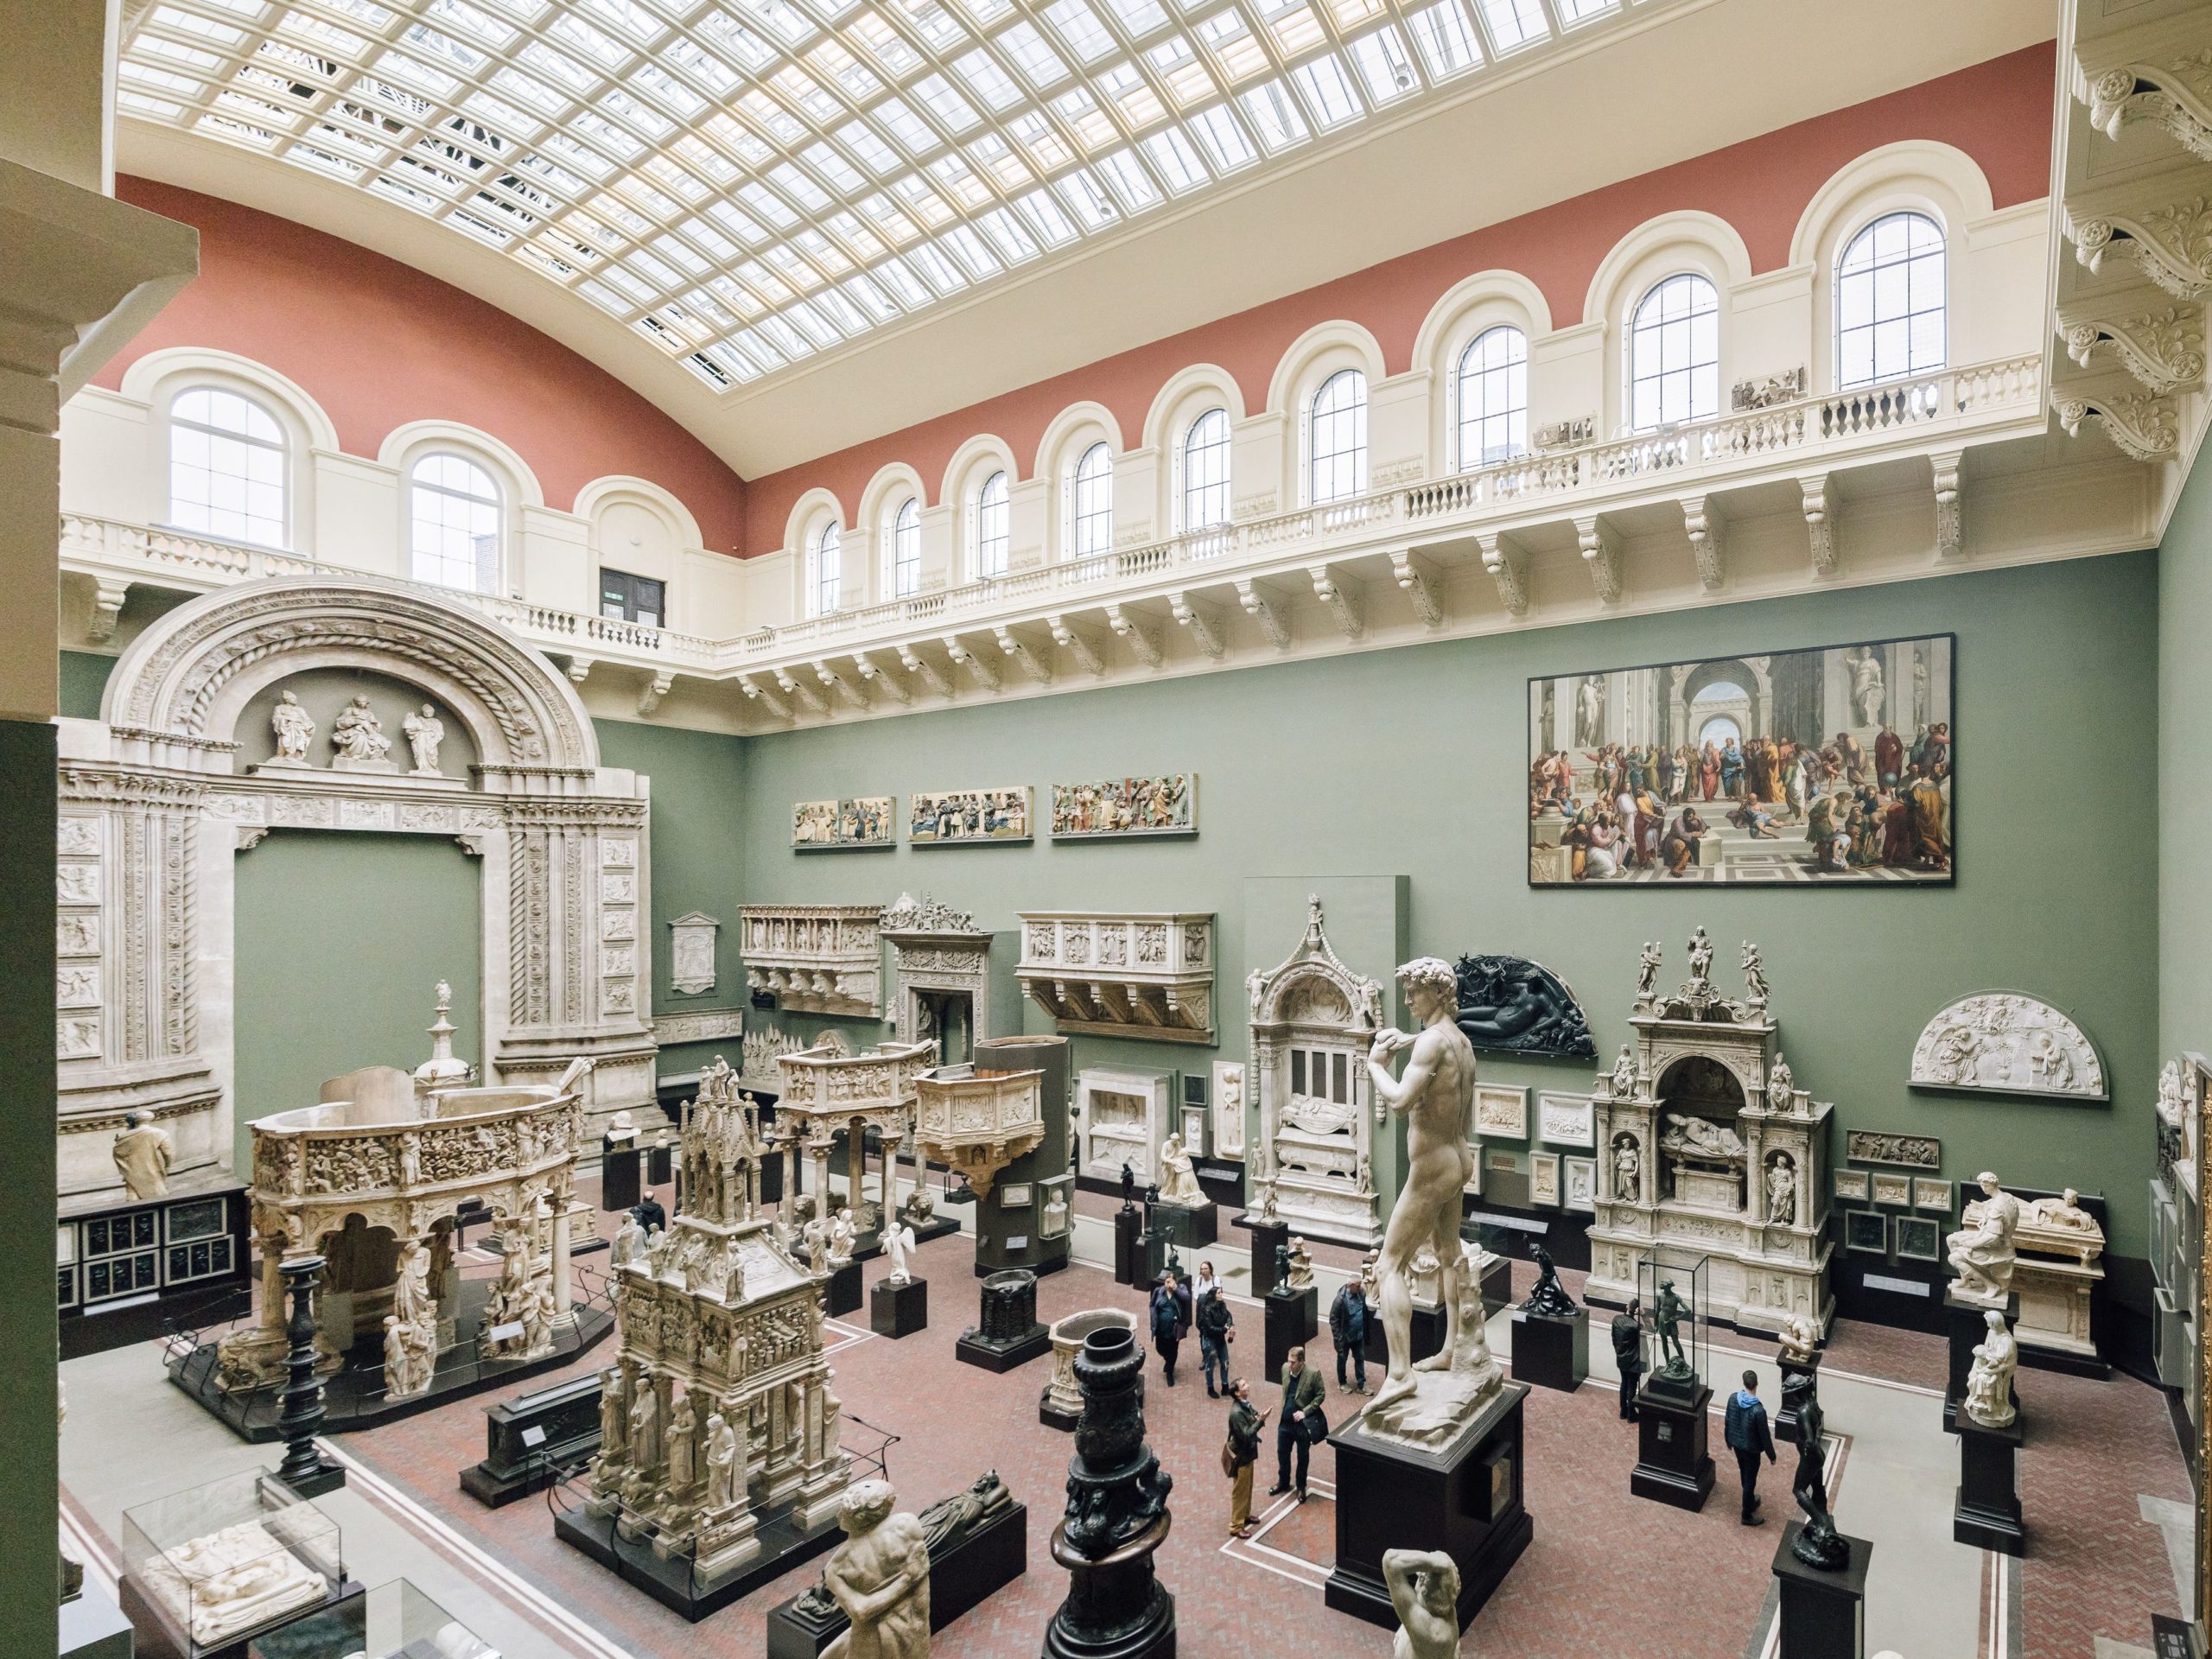 Музей виктории в лондоне